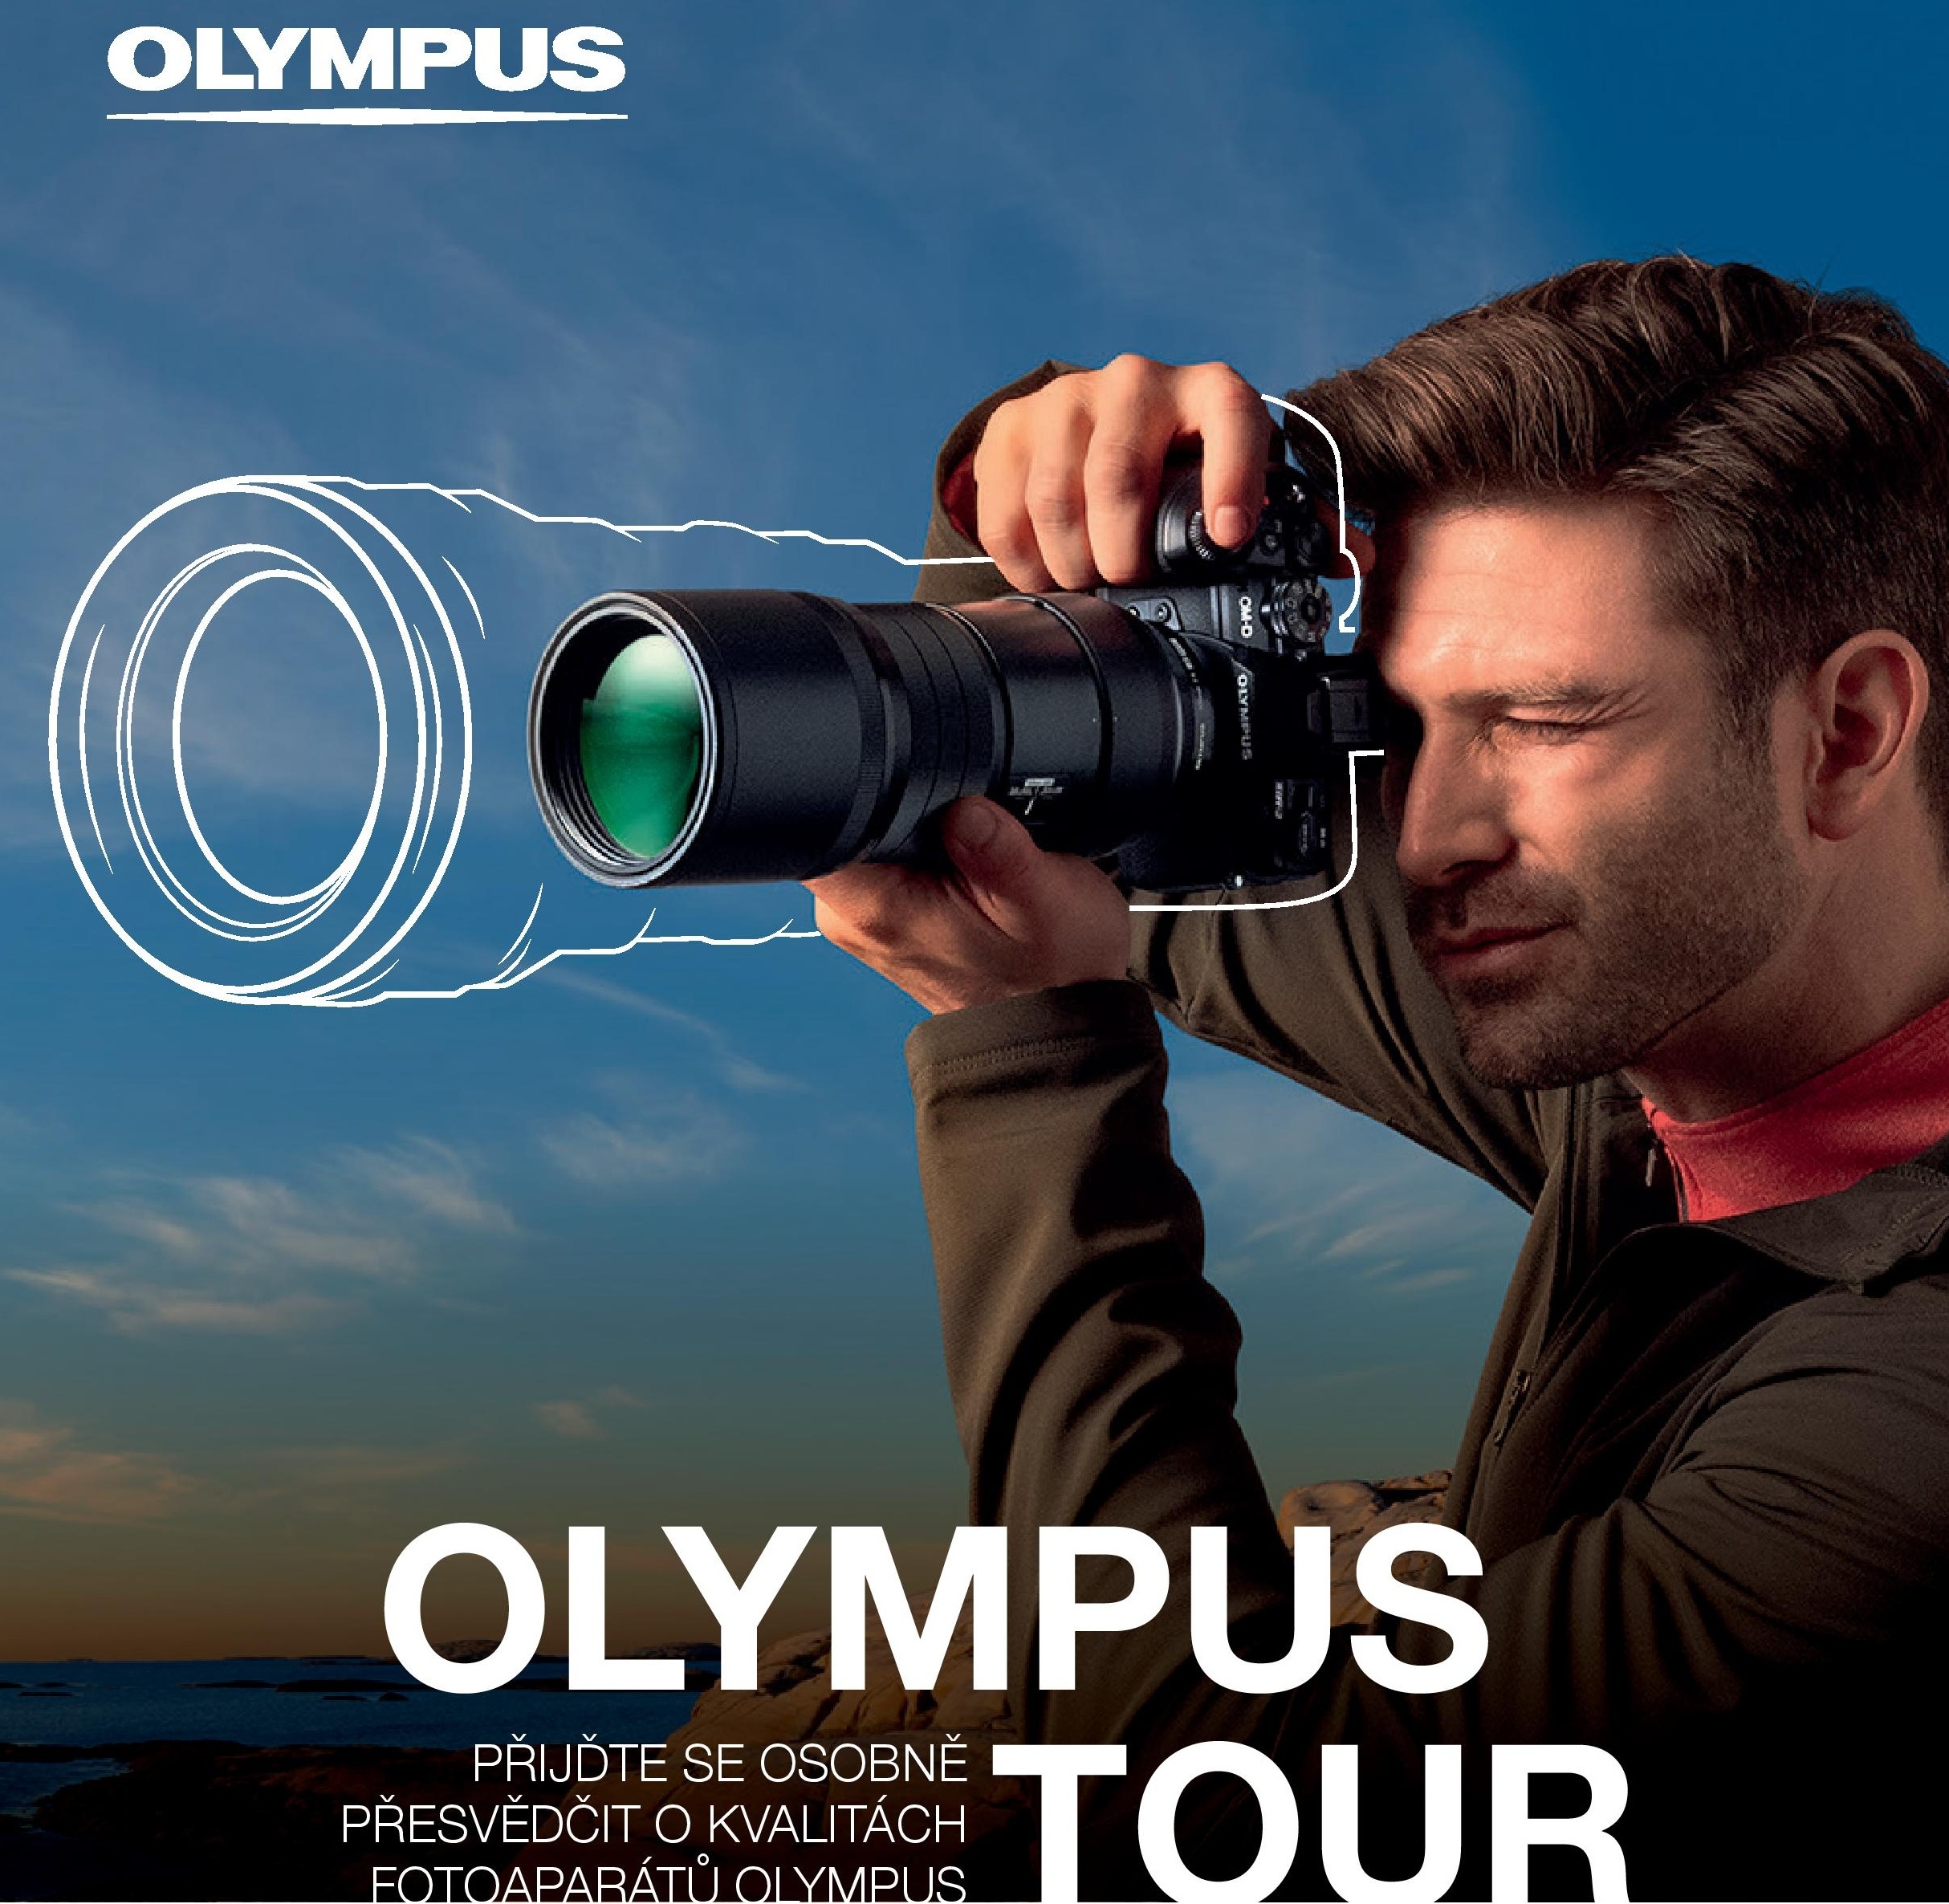 OLYMPUS TOUR (19.11. 2019)